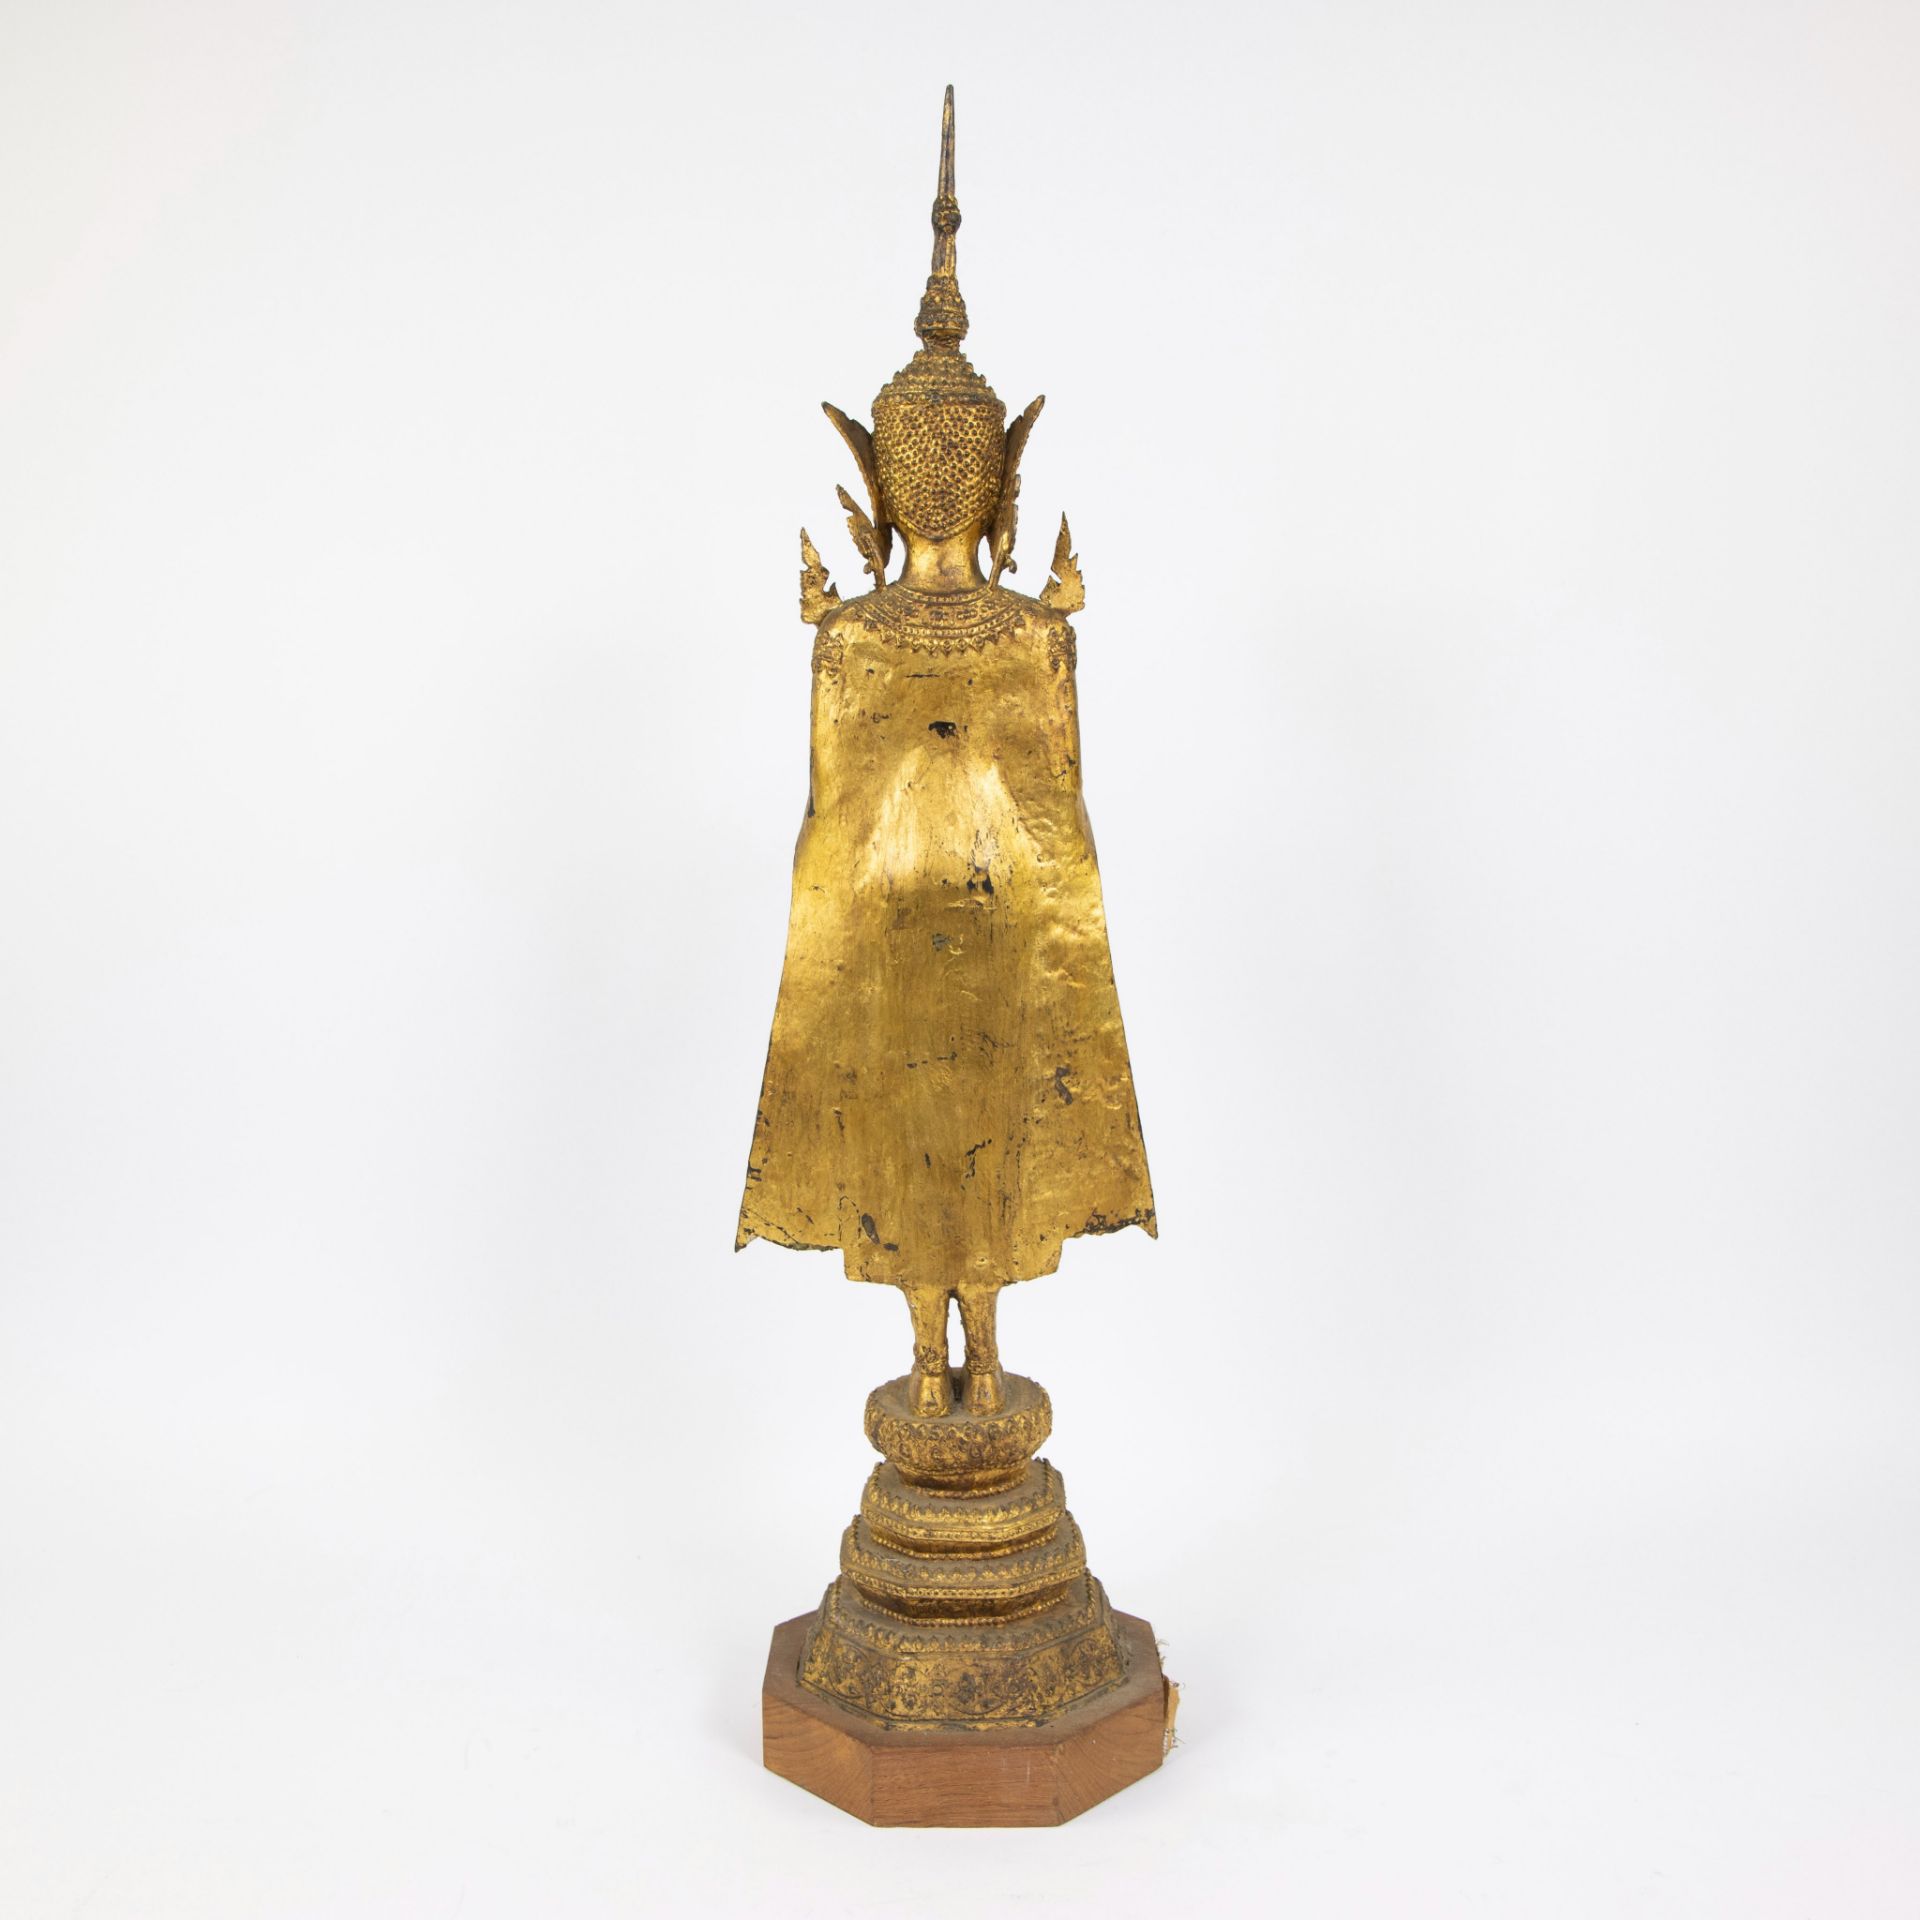 Gilded Rattanakosin standing Buddha, Thailand - Image 3 of 4